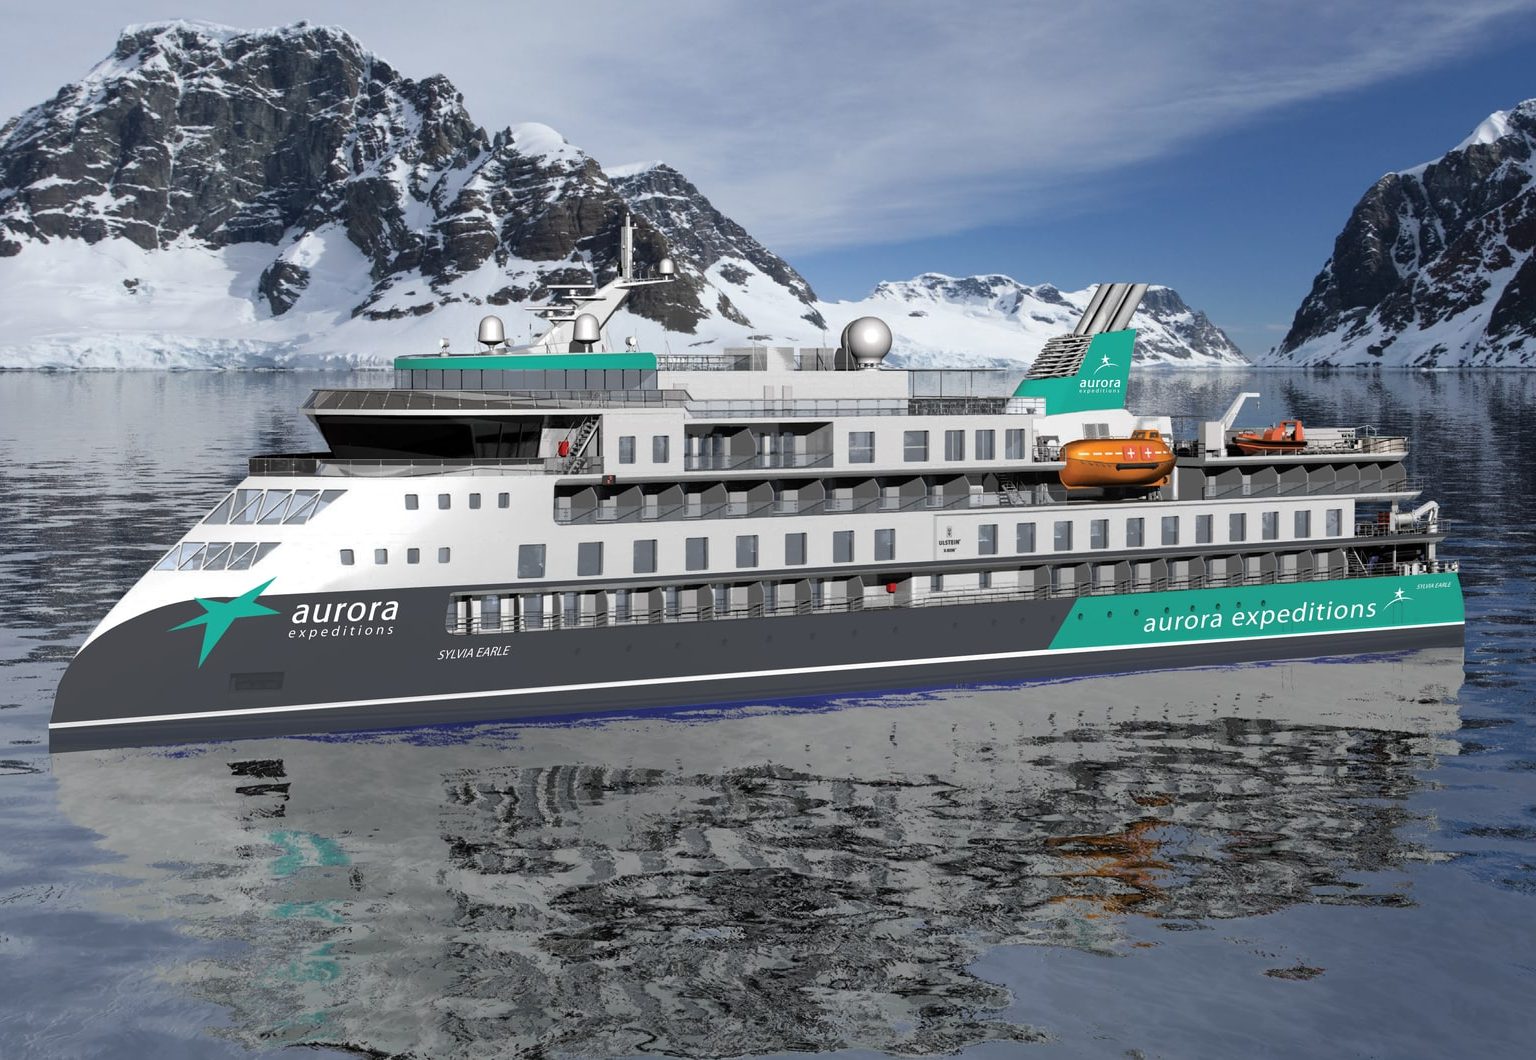 Aurora Expeditions Antarctica cruise ship Sylvia Earle